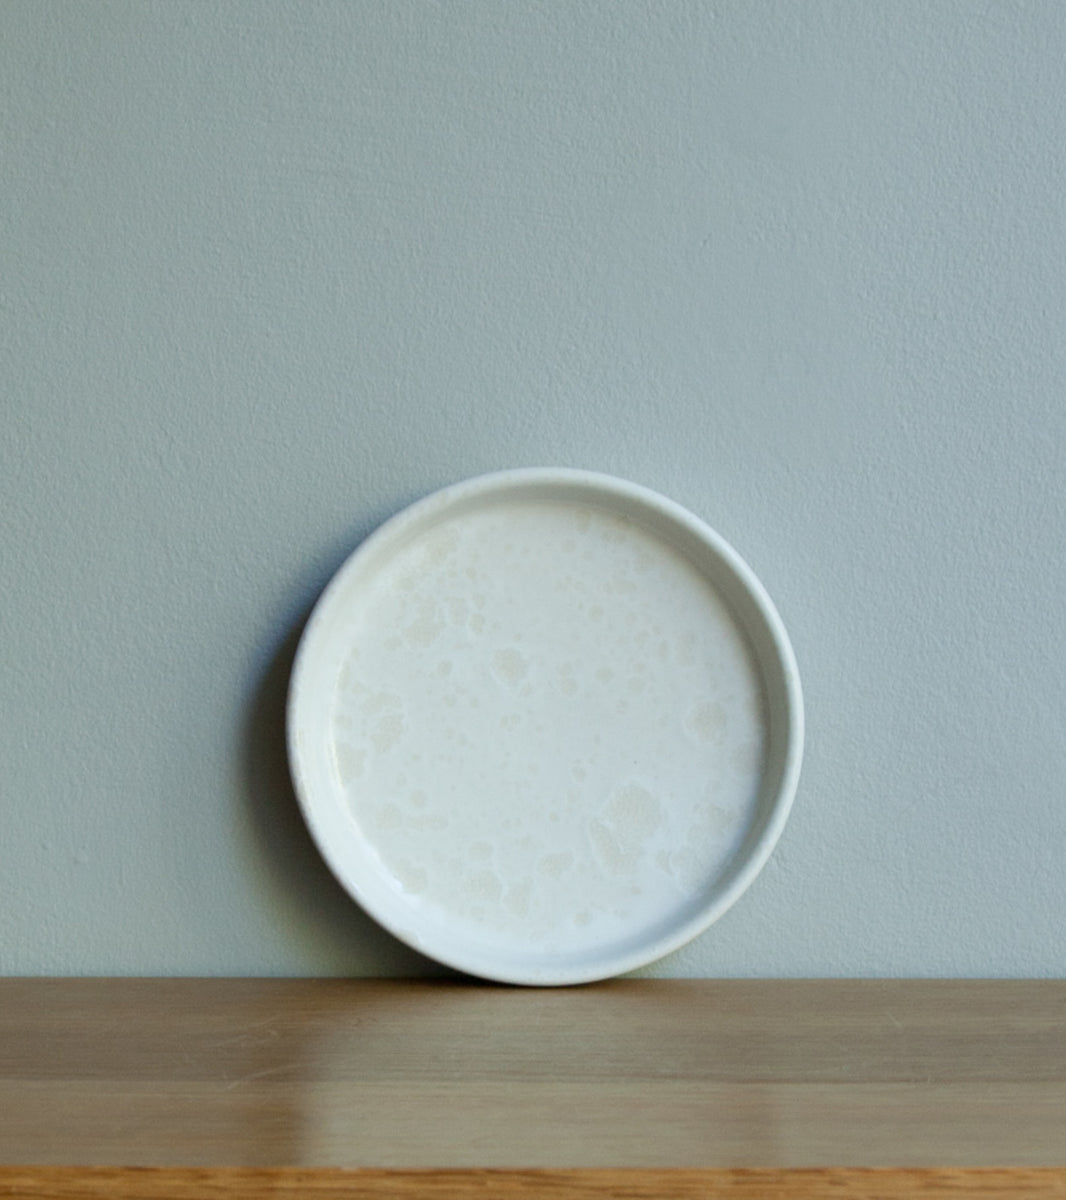 Medium Rimmed Plate 4 Ivory White Glaze Kasper Würtz - Image 4